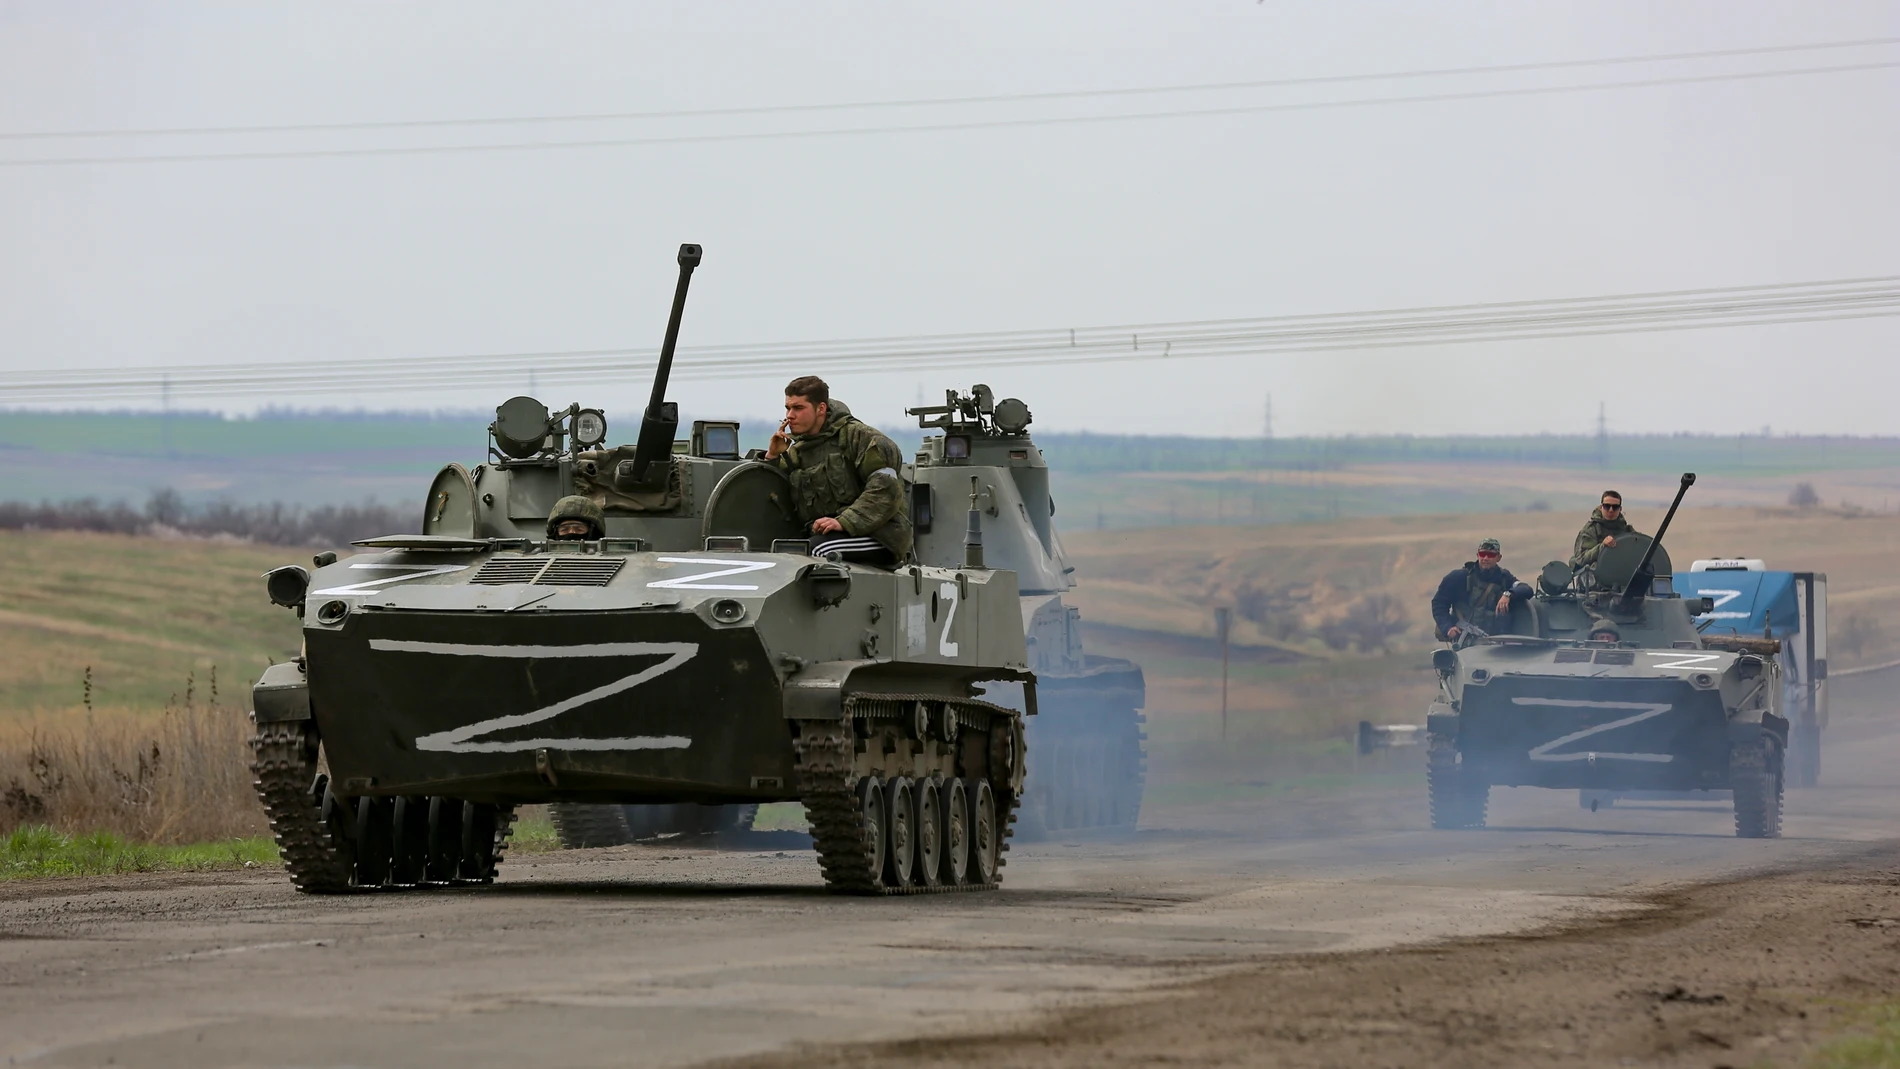 Carros de combate de las tropas rusas circulan en los alrededores de la sitiada Mariúpol.